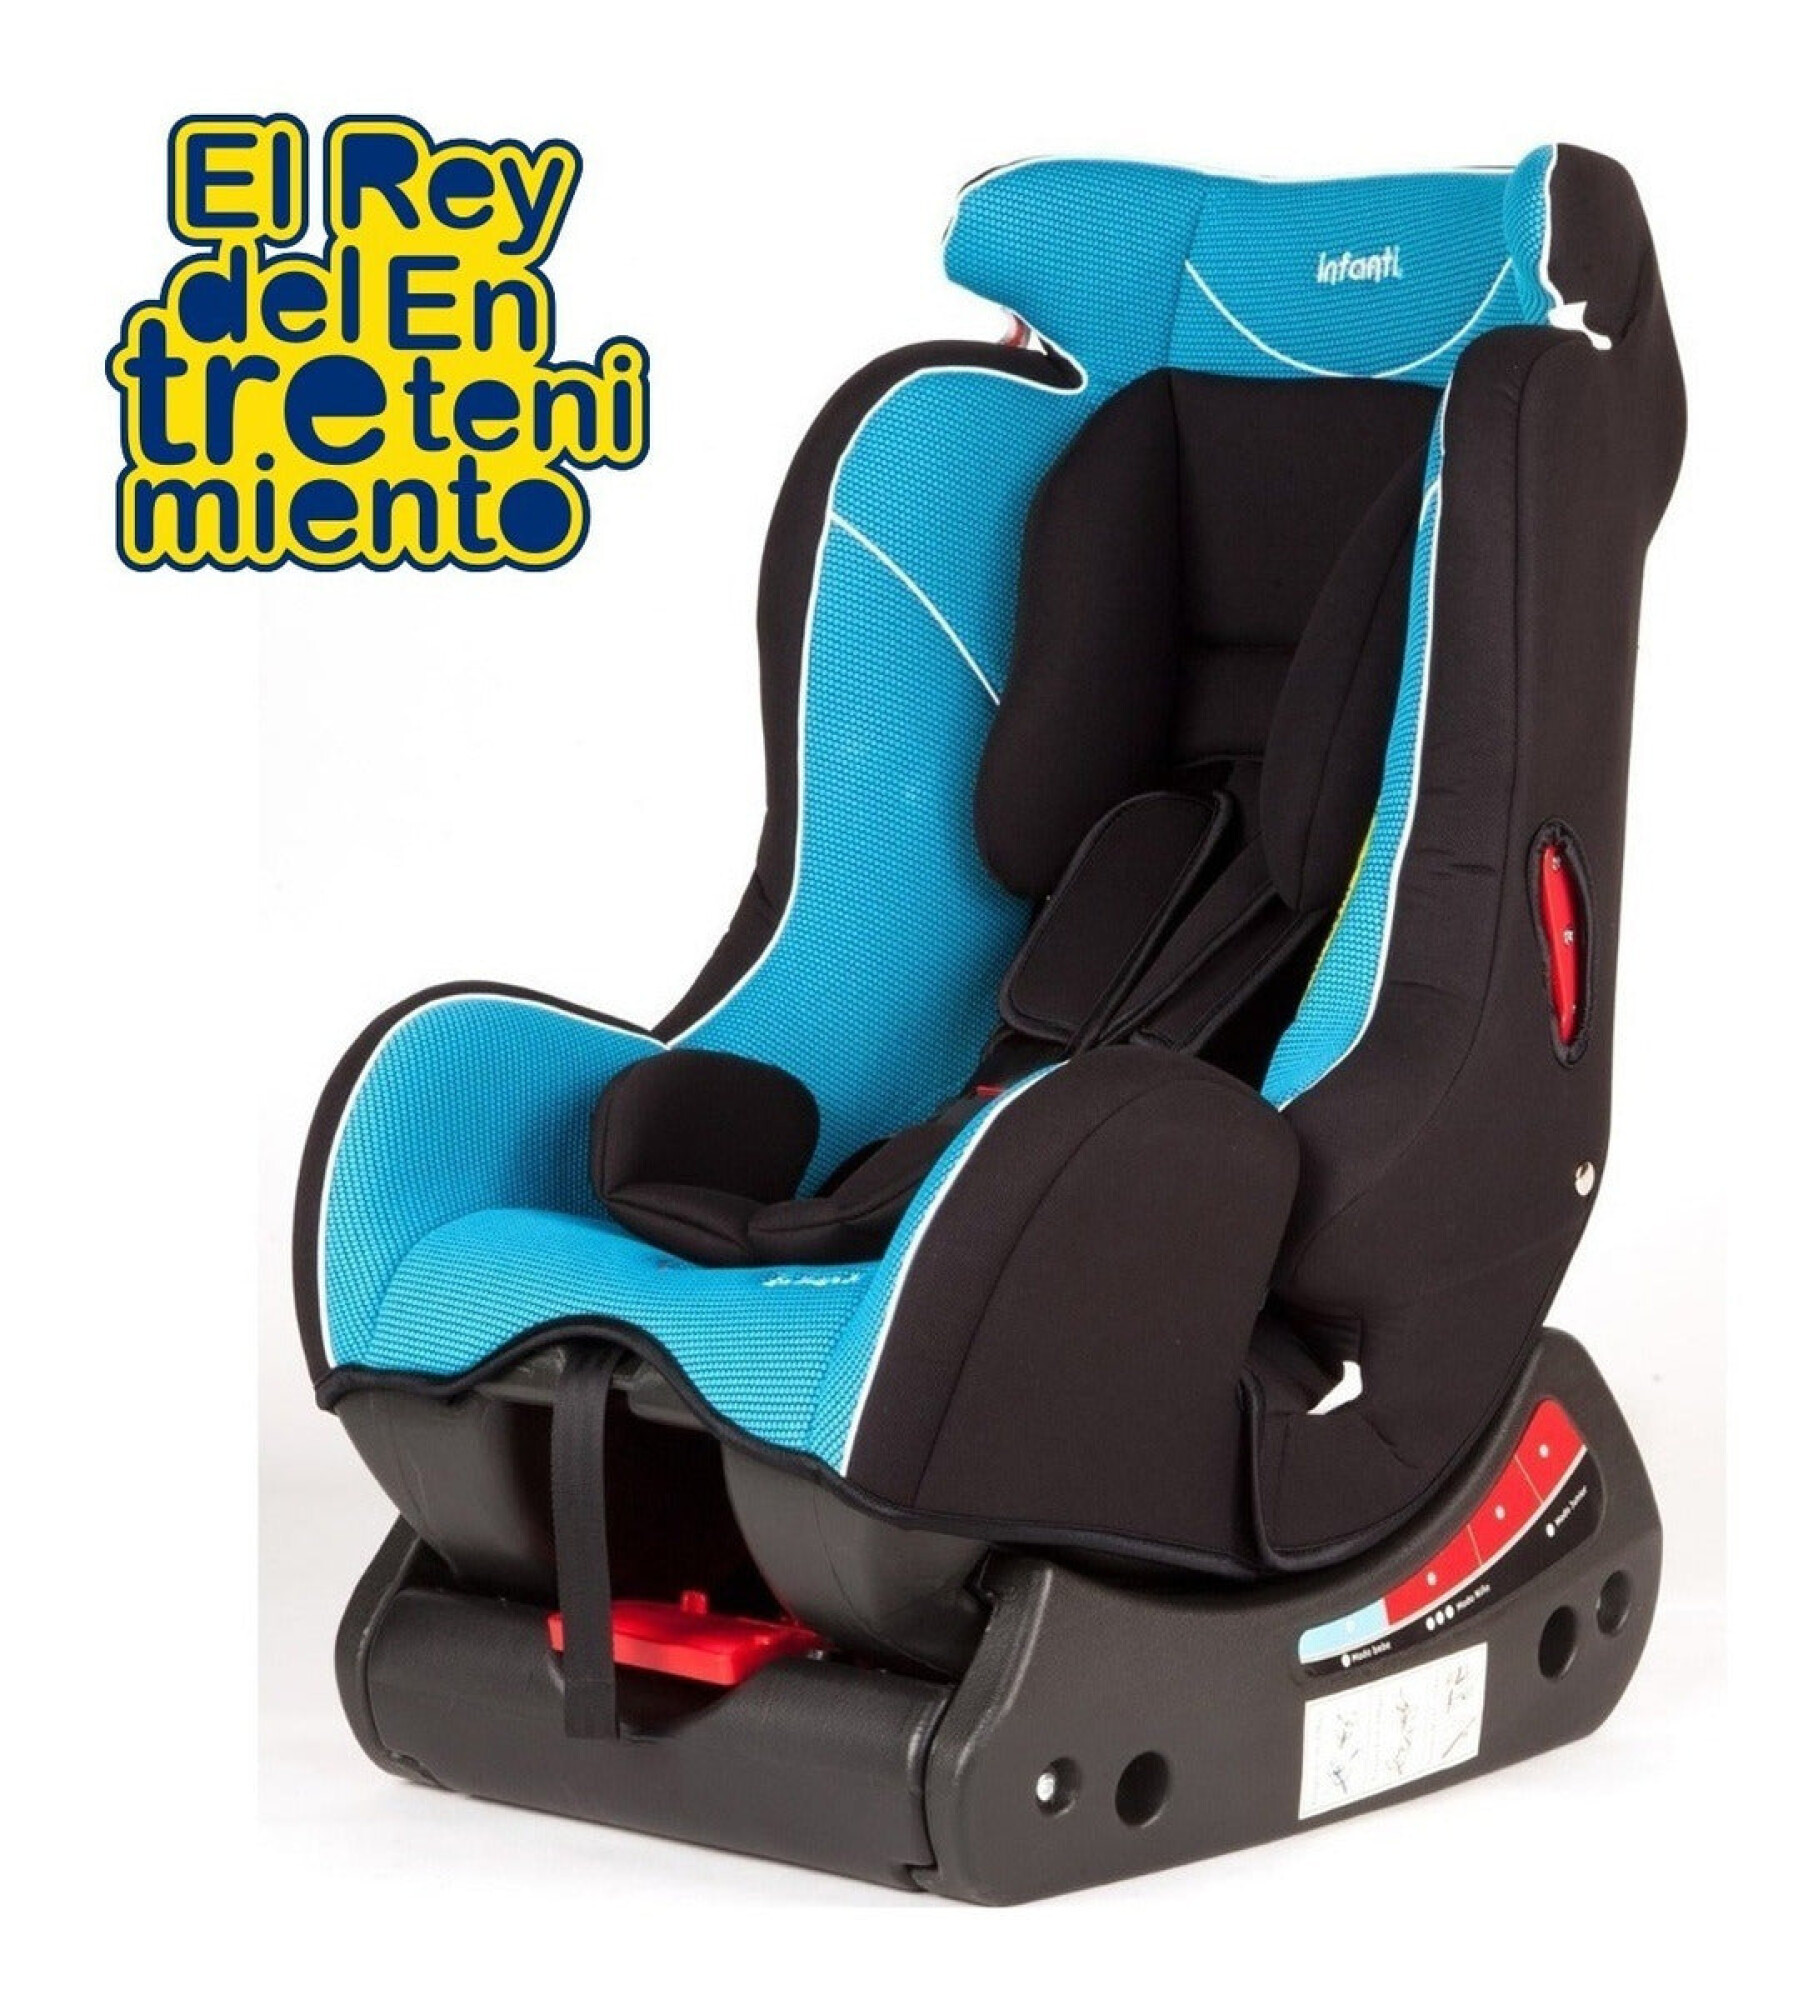 BABYLON silla coche grupo 2-3 Smart silla bebe coche baby, silla de bebe  para coche Niños 15-36 kg (3 a 12 años). silla coche sin isofix fabricada  en